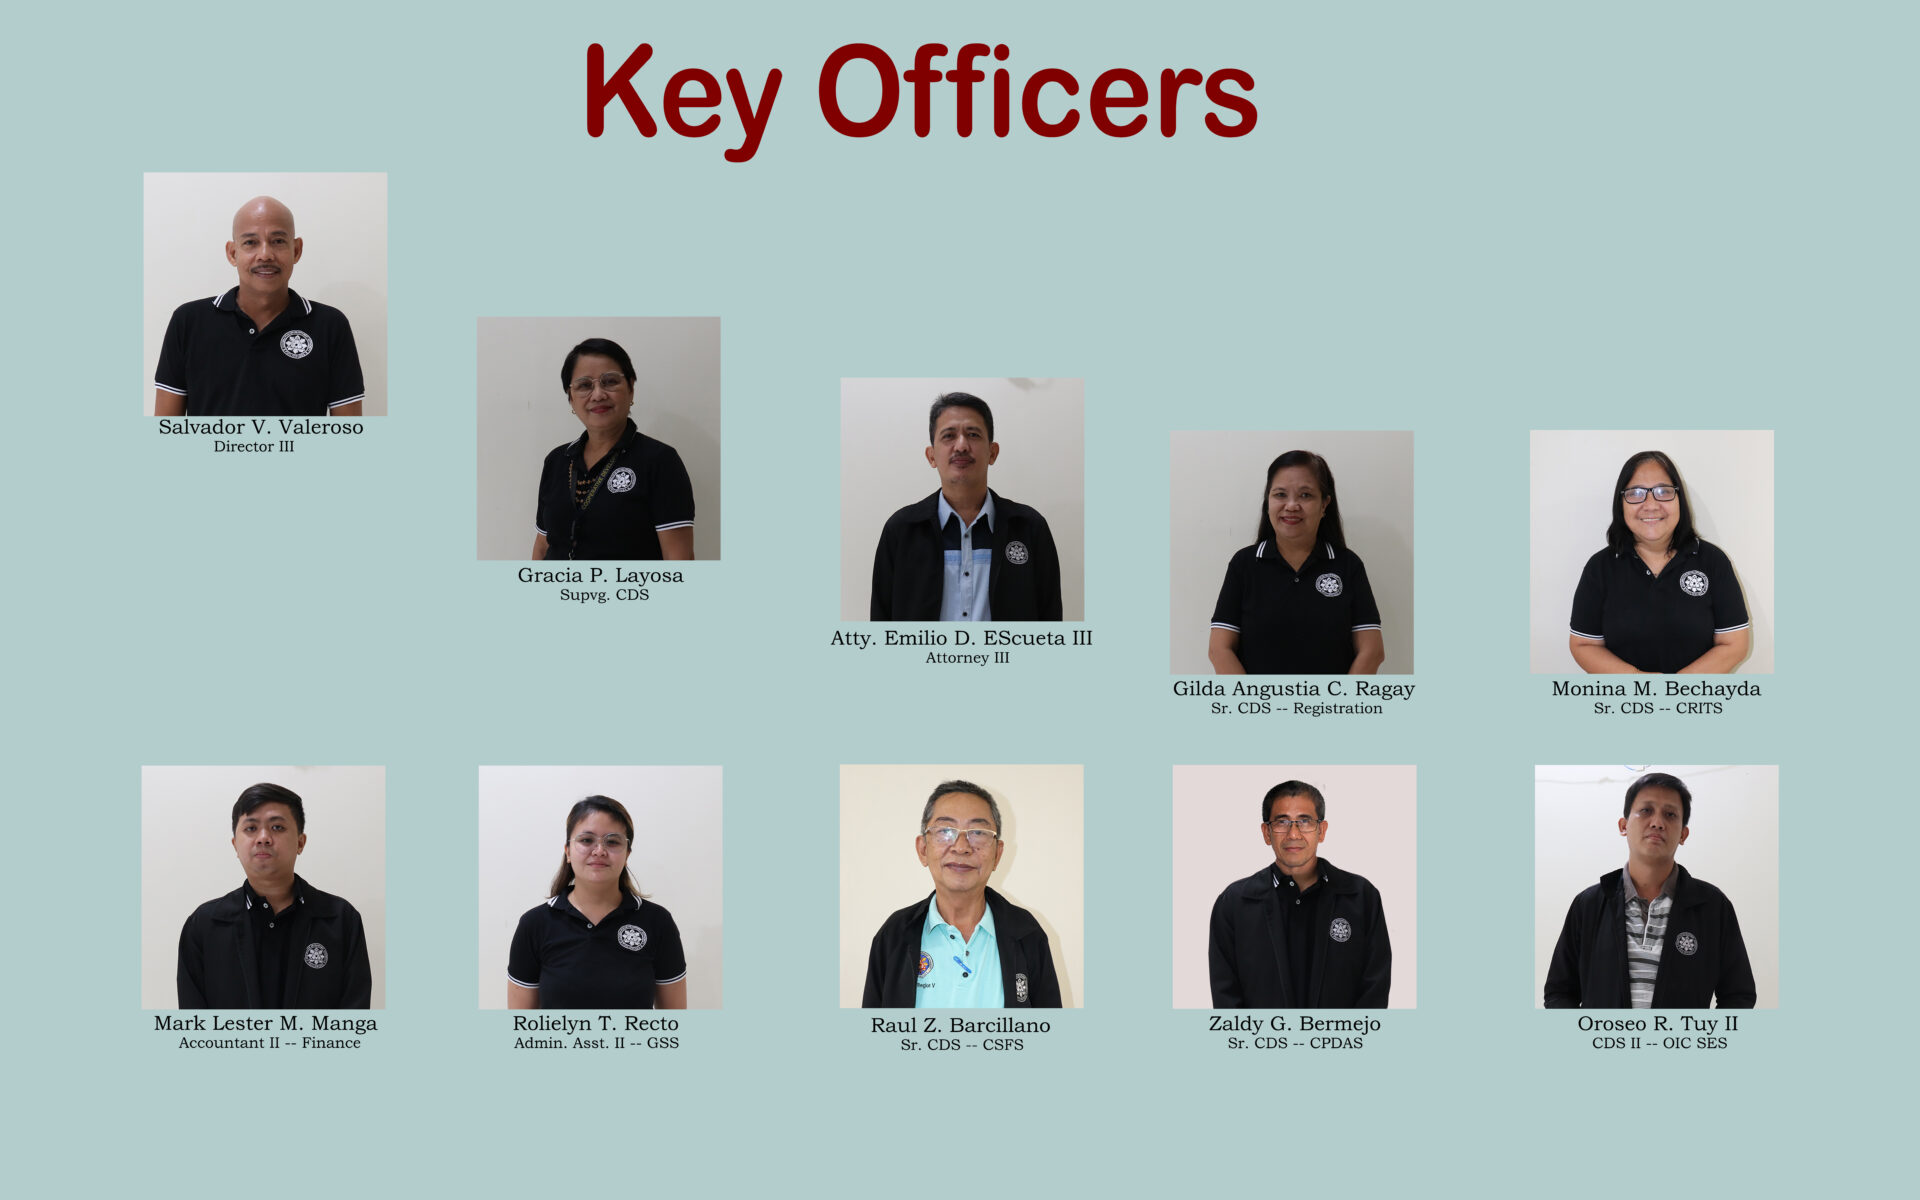 Key Officers - Region V